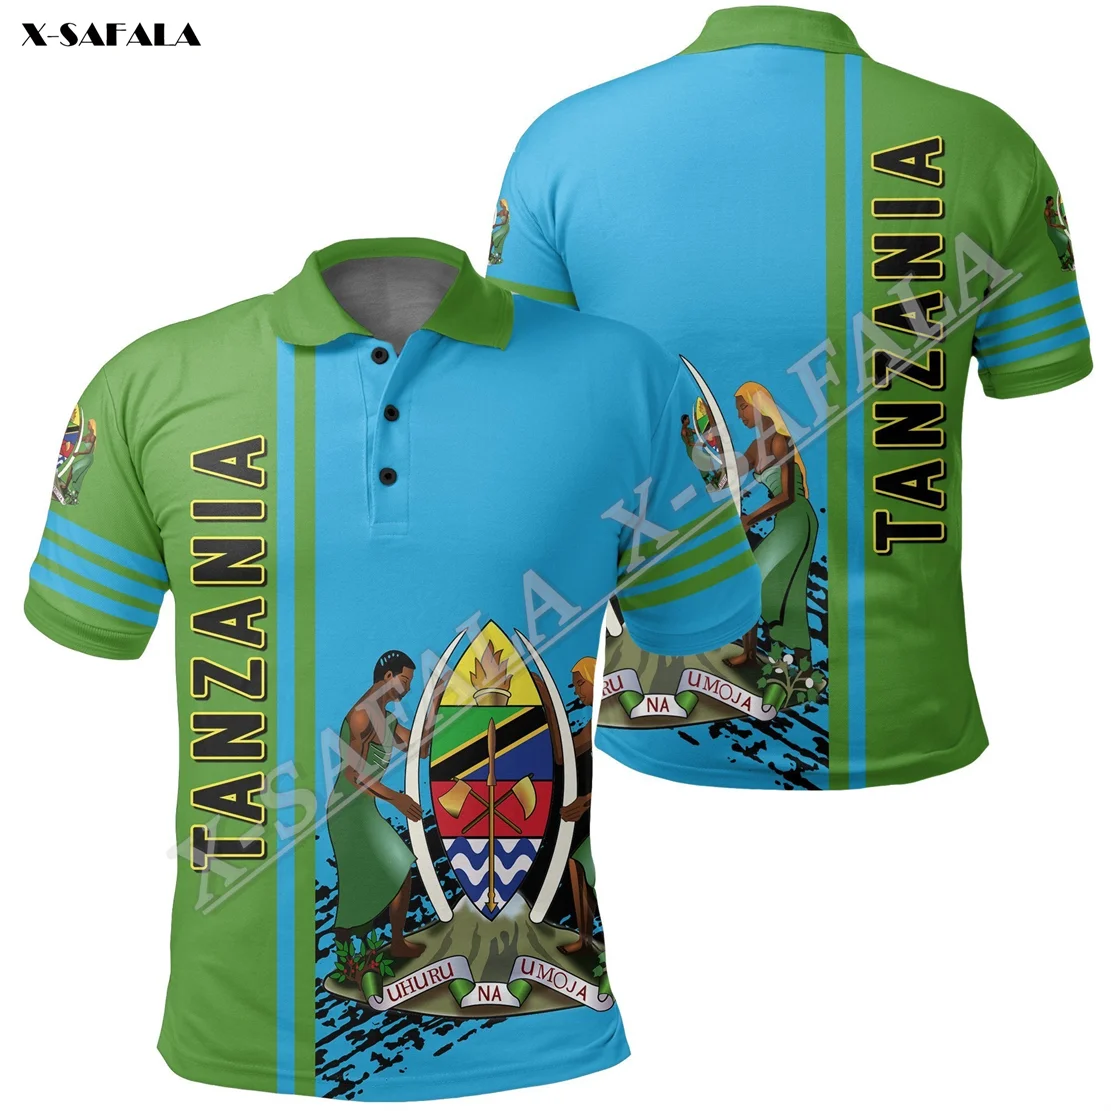 

Рубашка-поло мужская с 3D-принтом и флагами Танзании